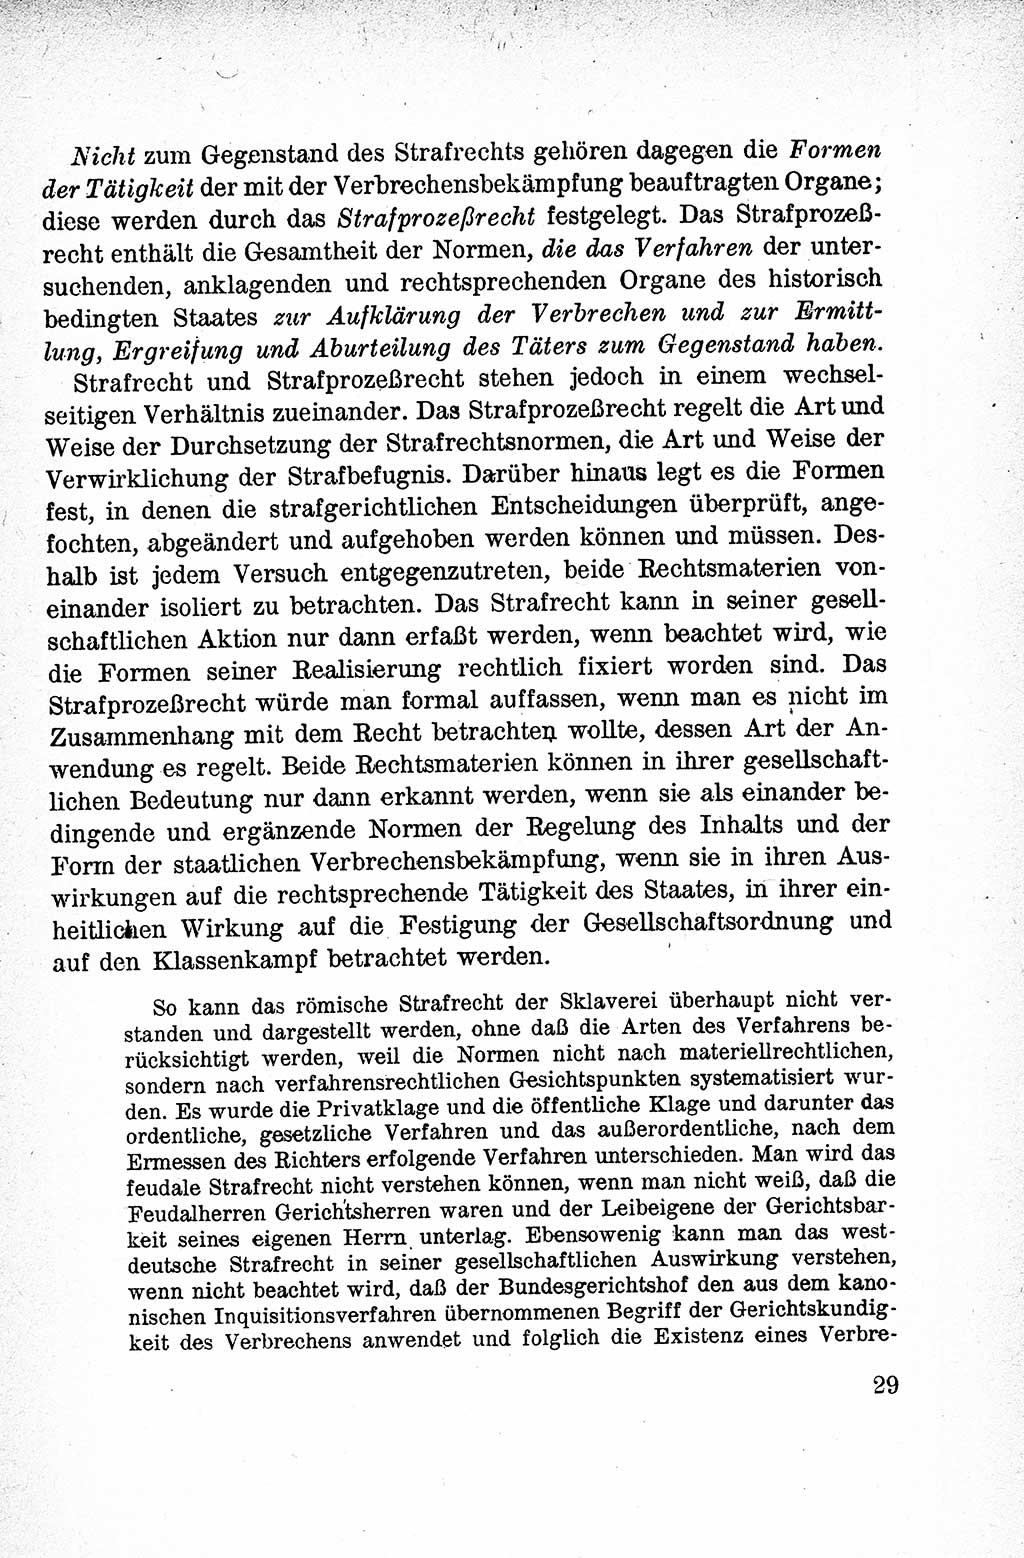 Lehrbuch des Strafrechts der Deutschen Demokratischen Republik (DDR), Allgemeiner Teil 1959, Seite 29 (Lb. Strafr. DDR AT 1959, S. 29)